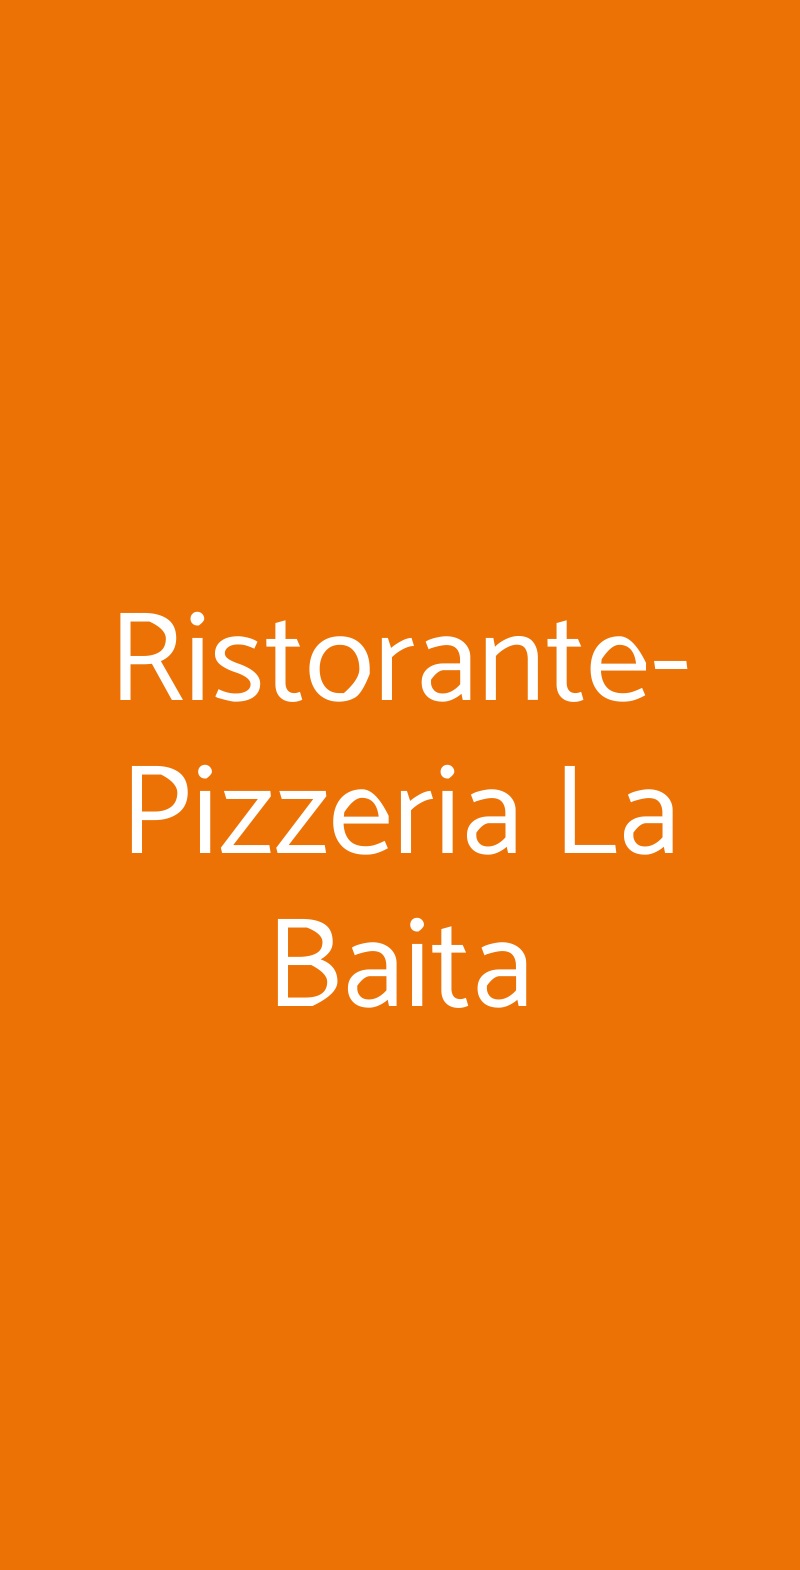 Ristorante-Pizzeria La Baita Genova menù 1 pagina